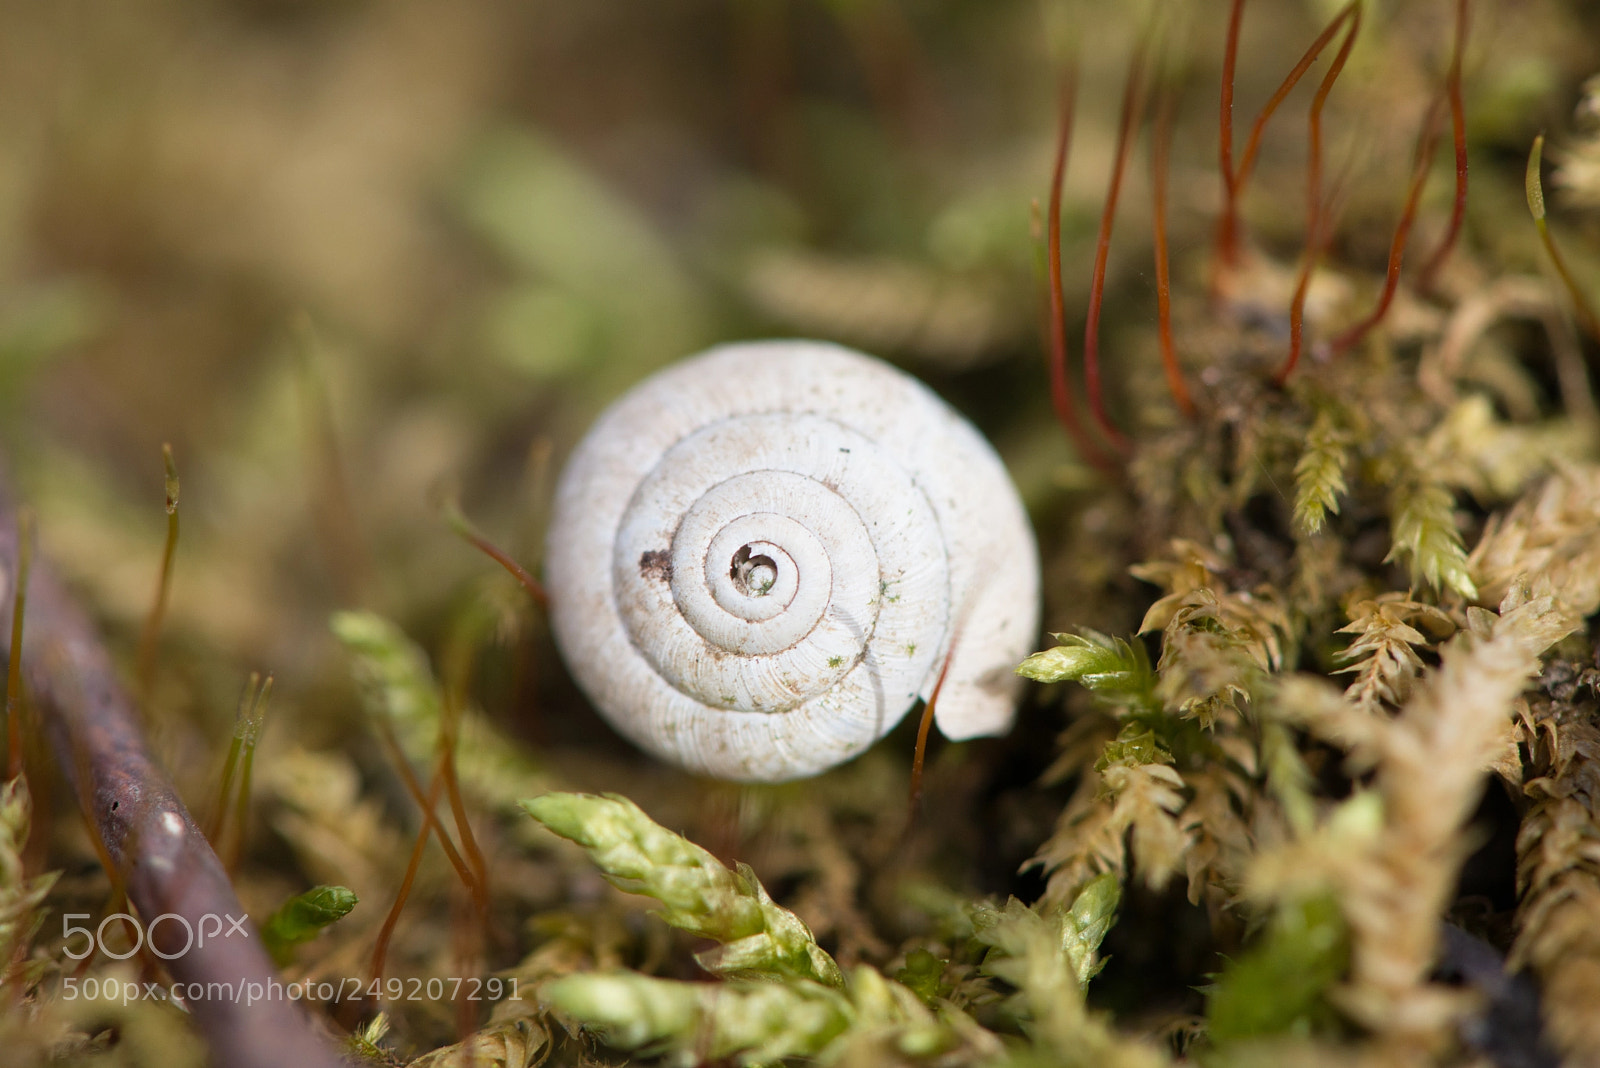 Nikon D800 sample photo. Dead snail‘s tale photography